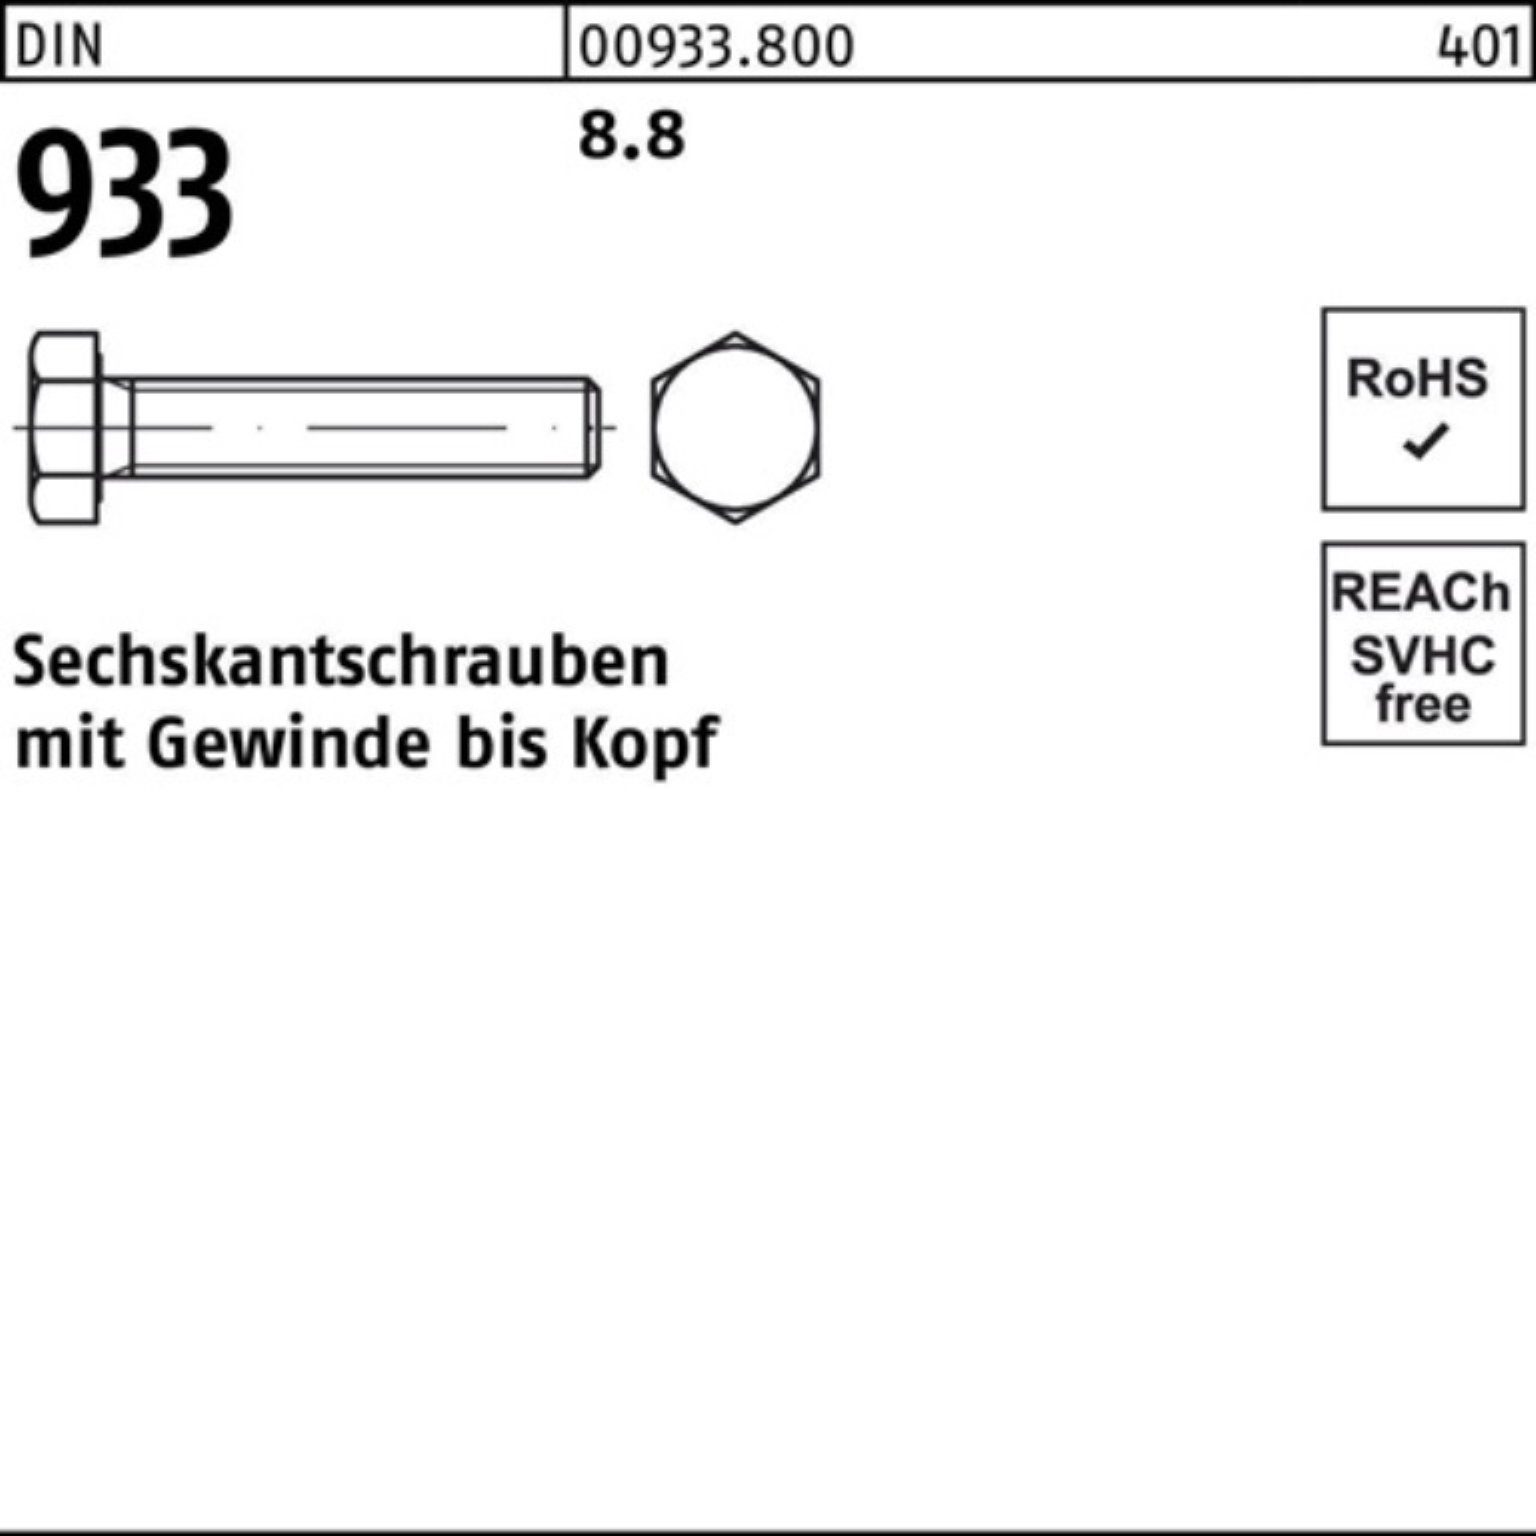 Reyher Sechskantschraube 200 Pack VG 933 Stück DIN DIN Sechskantschraube 200er M6x 8.8 933 45